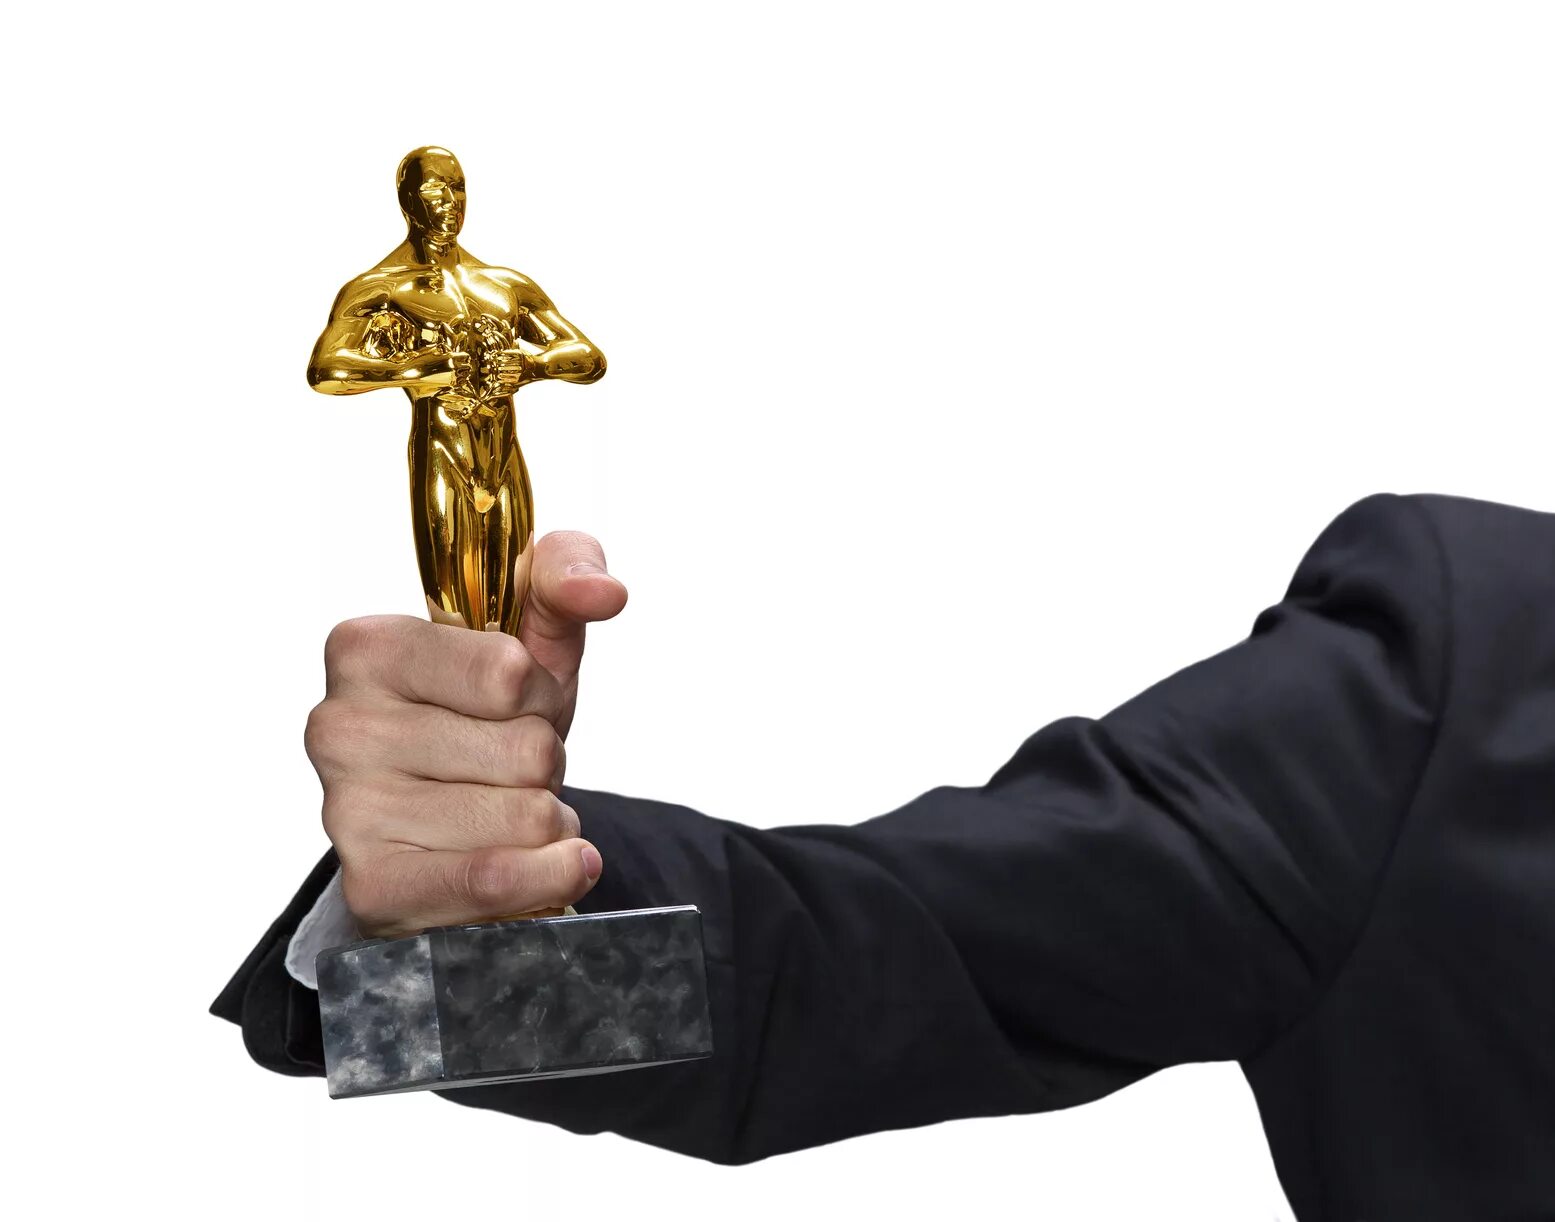 Постоянная премия. Оскар в руках. Что держит статуэтка Оскар. Статуэтка рука держит. Человек с Оскаром в руке.